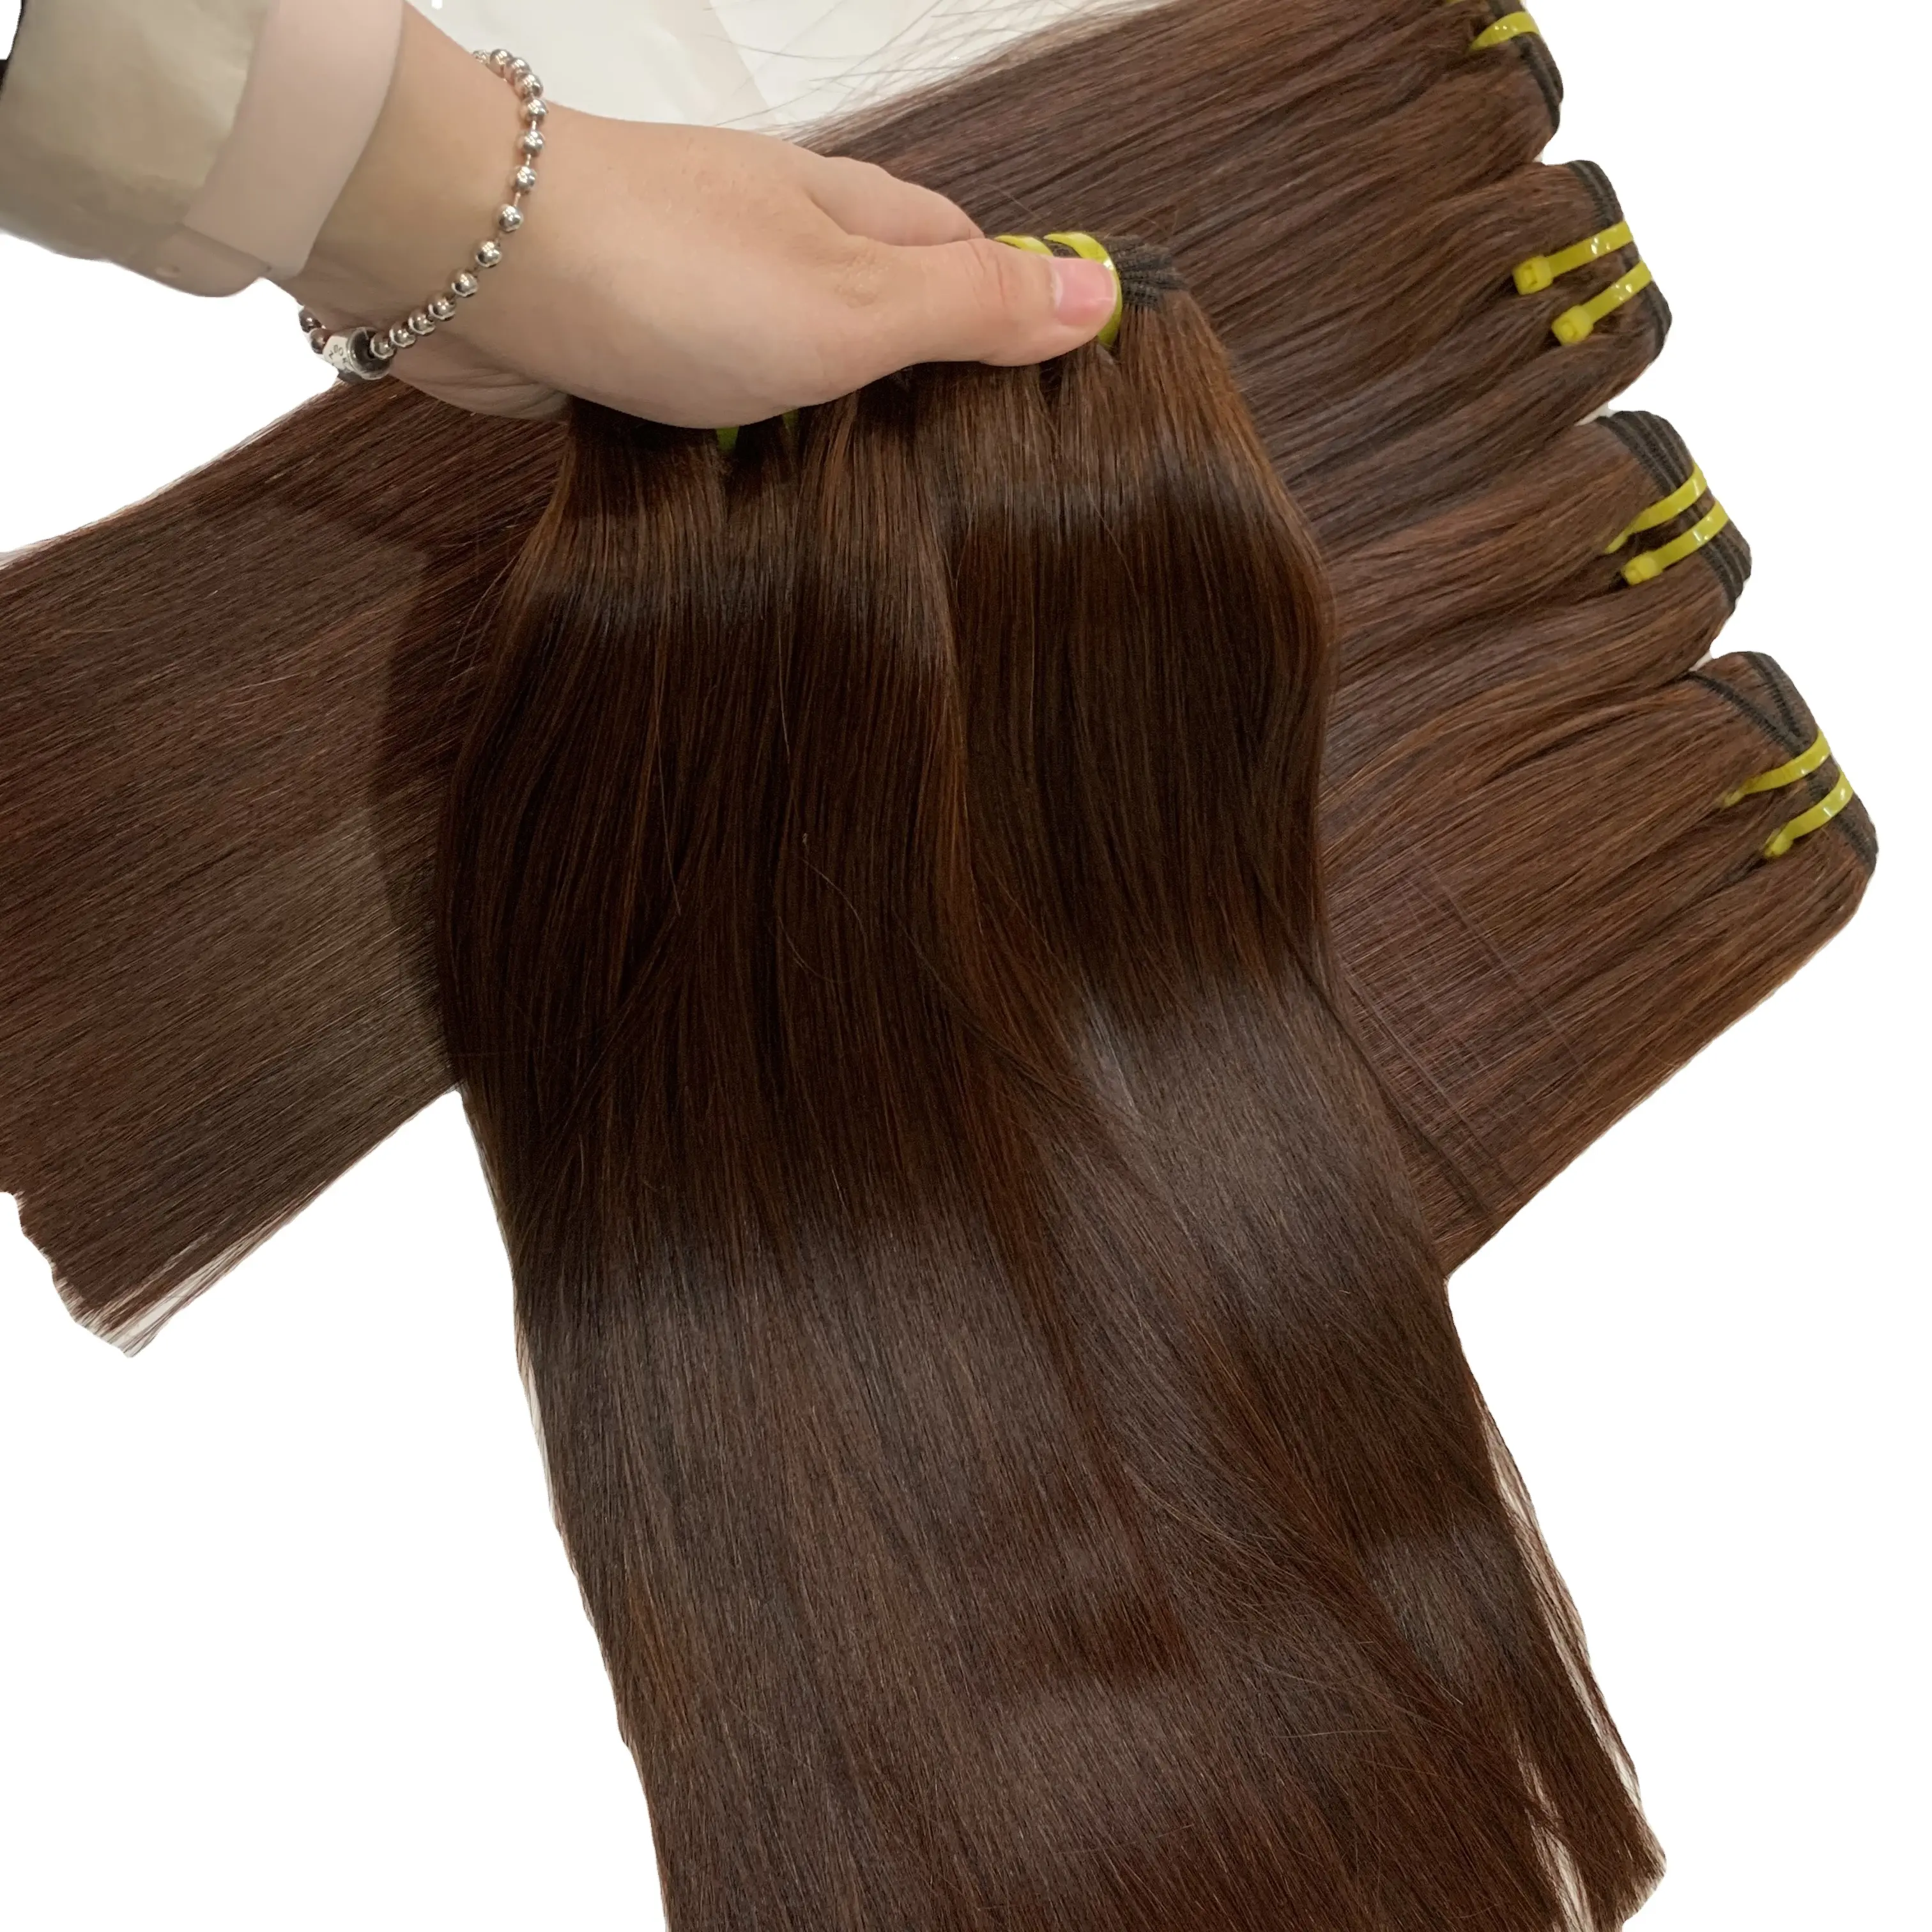 हाथ से बंधे हुए वेफ्ट उच्च गुणवत्ता वाले यूरोपीय बालों का विस्तार, वाइटनम हेयर ग्रेड 9a हड्डी सीधे नारंगी रंग